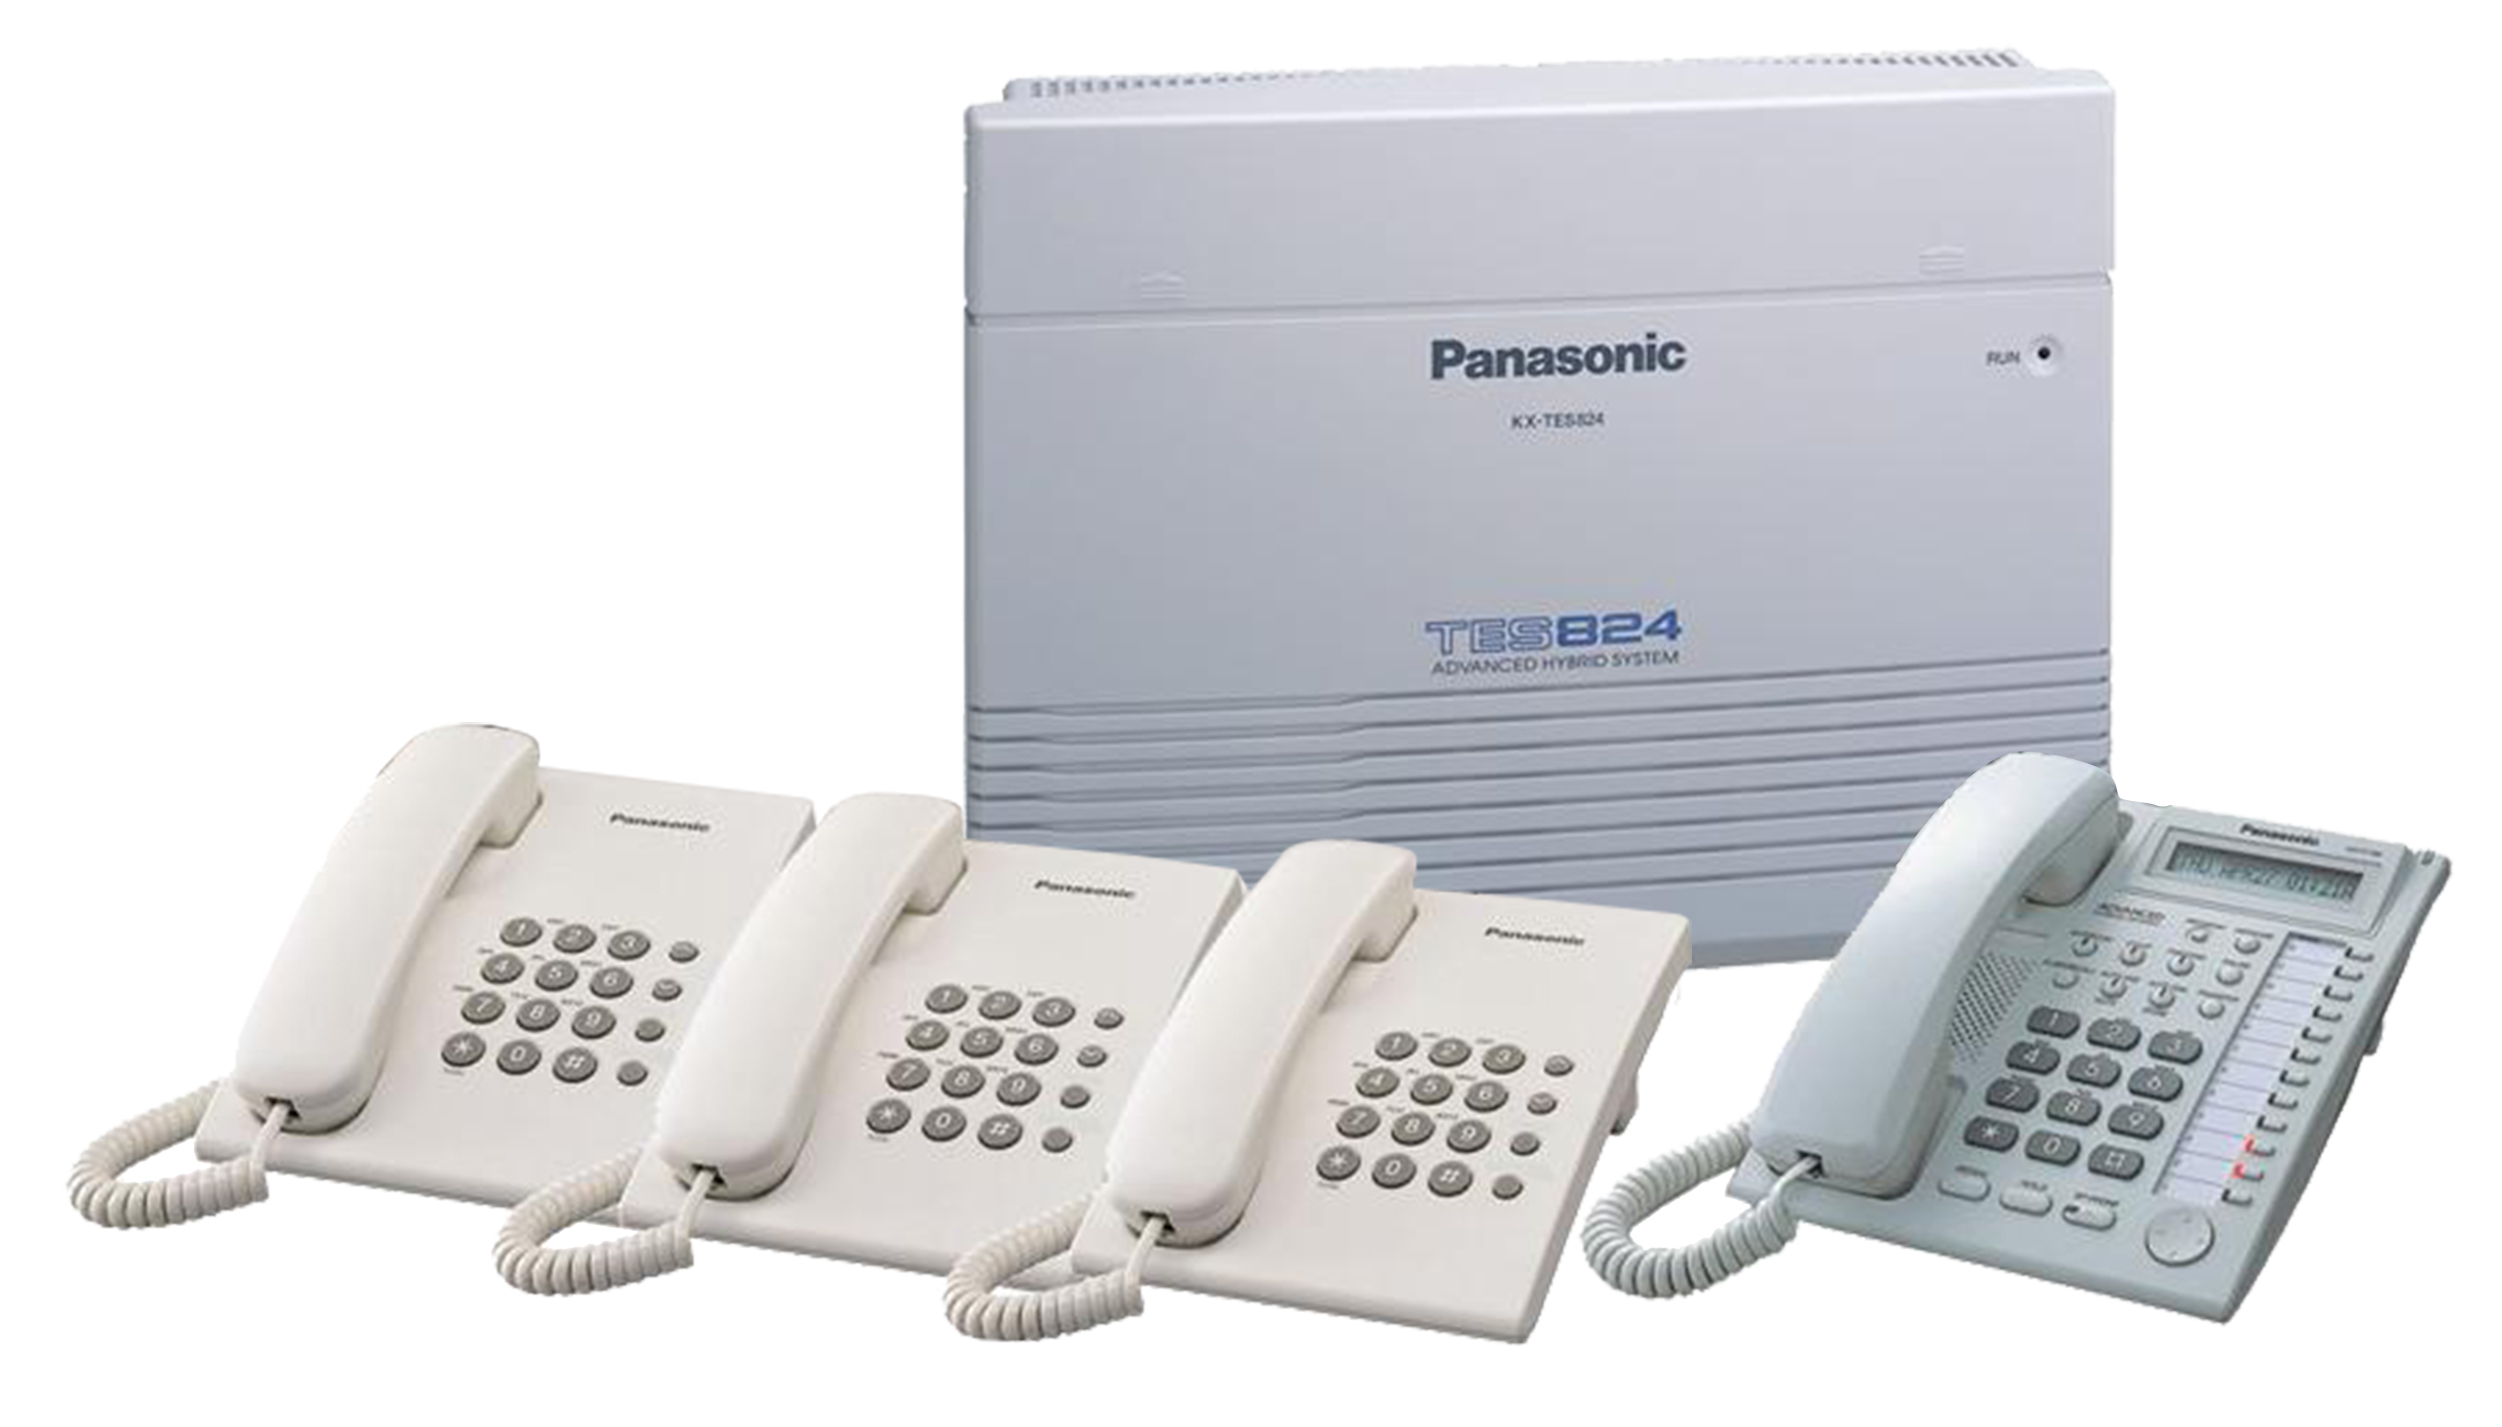 Lập trình tổng đài Panasonic bằng điện thoại KX-T7730